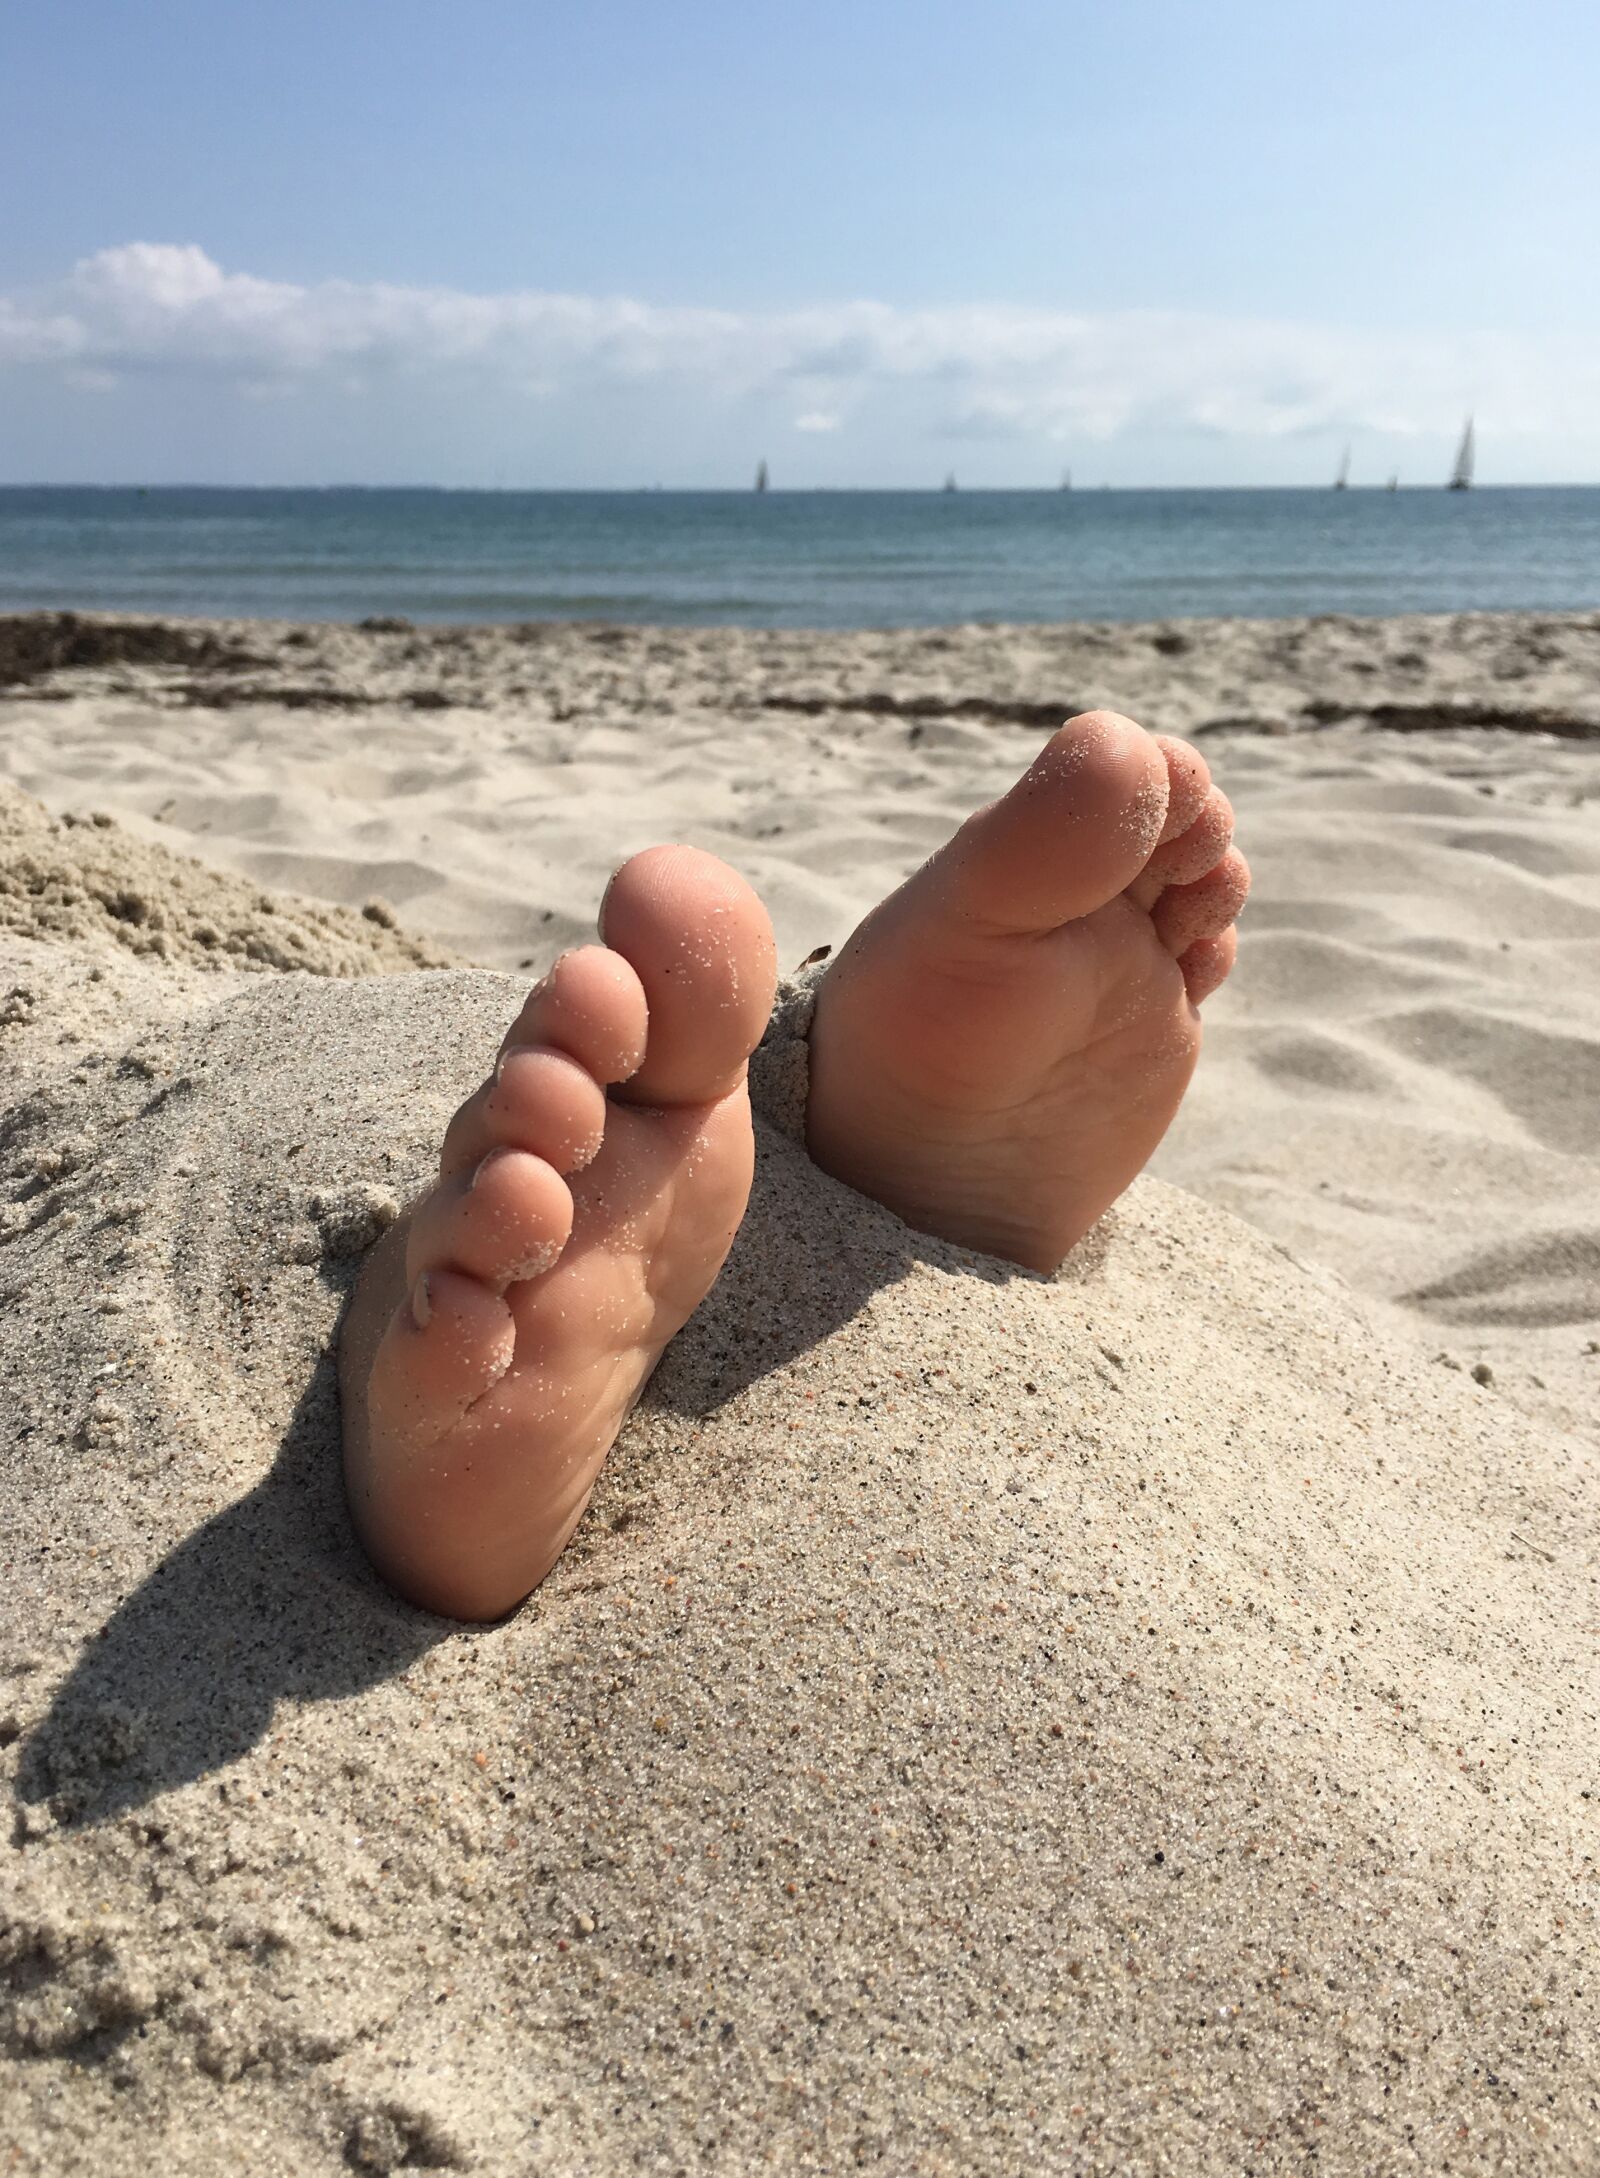 Apple iPhone 6s sample photo. Feet, beach, sand photography